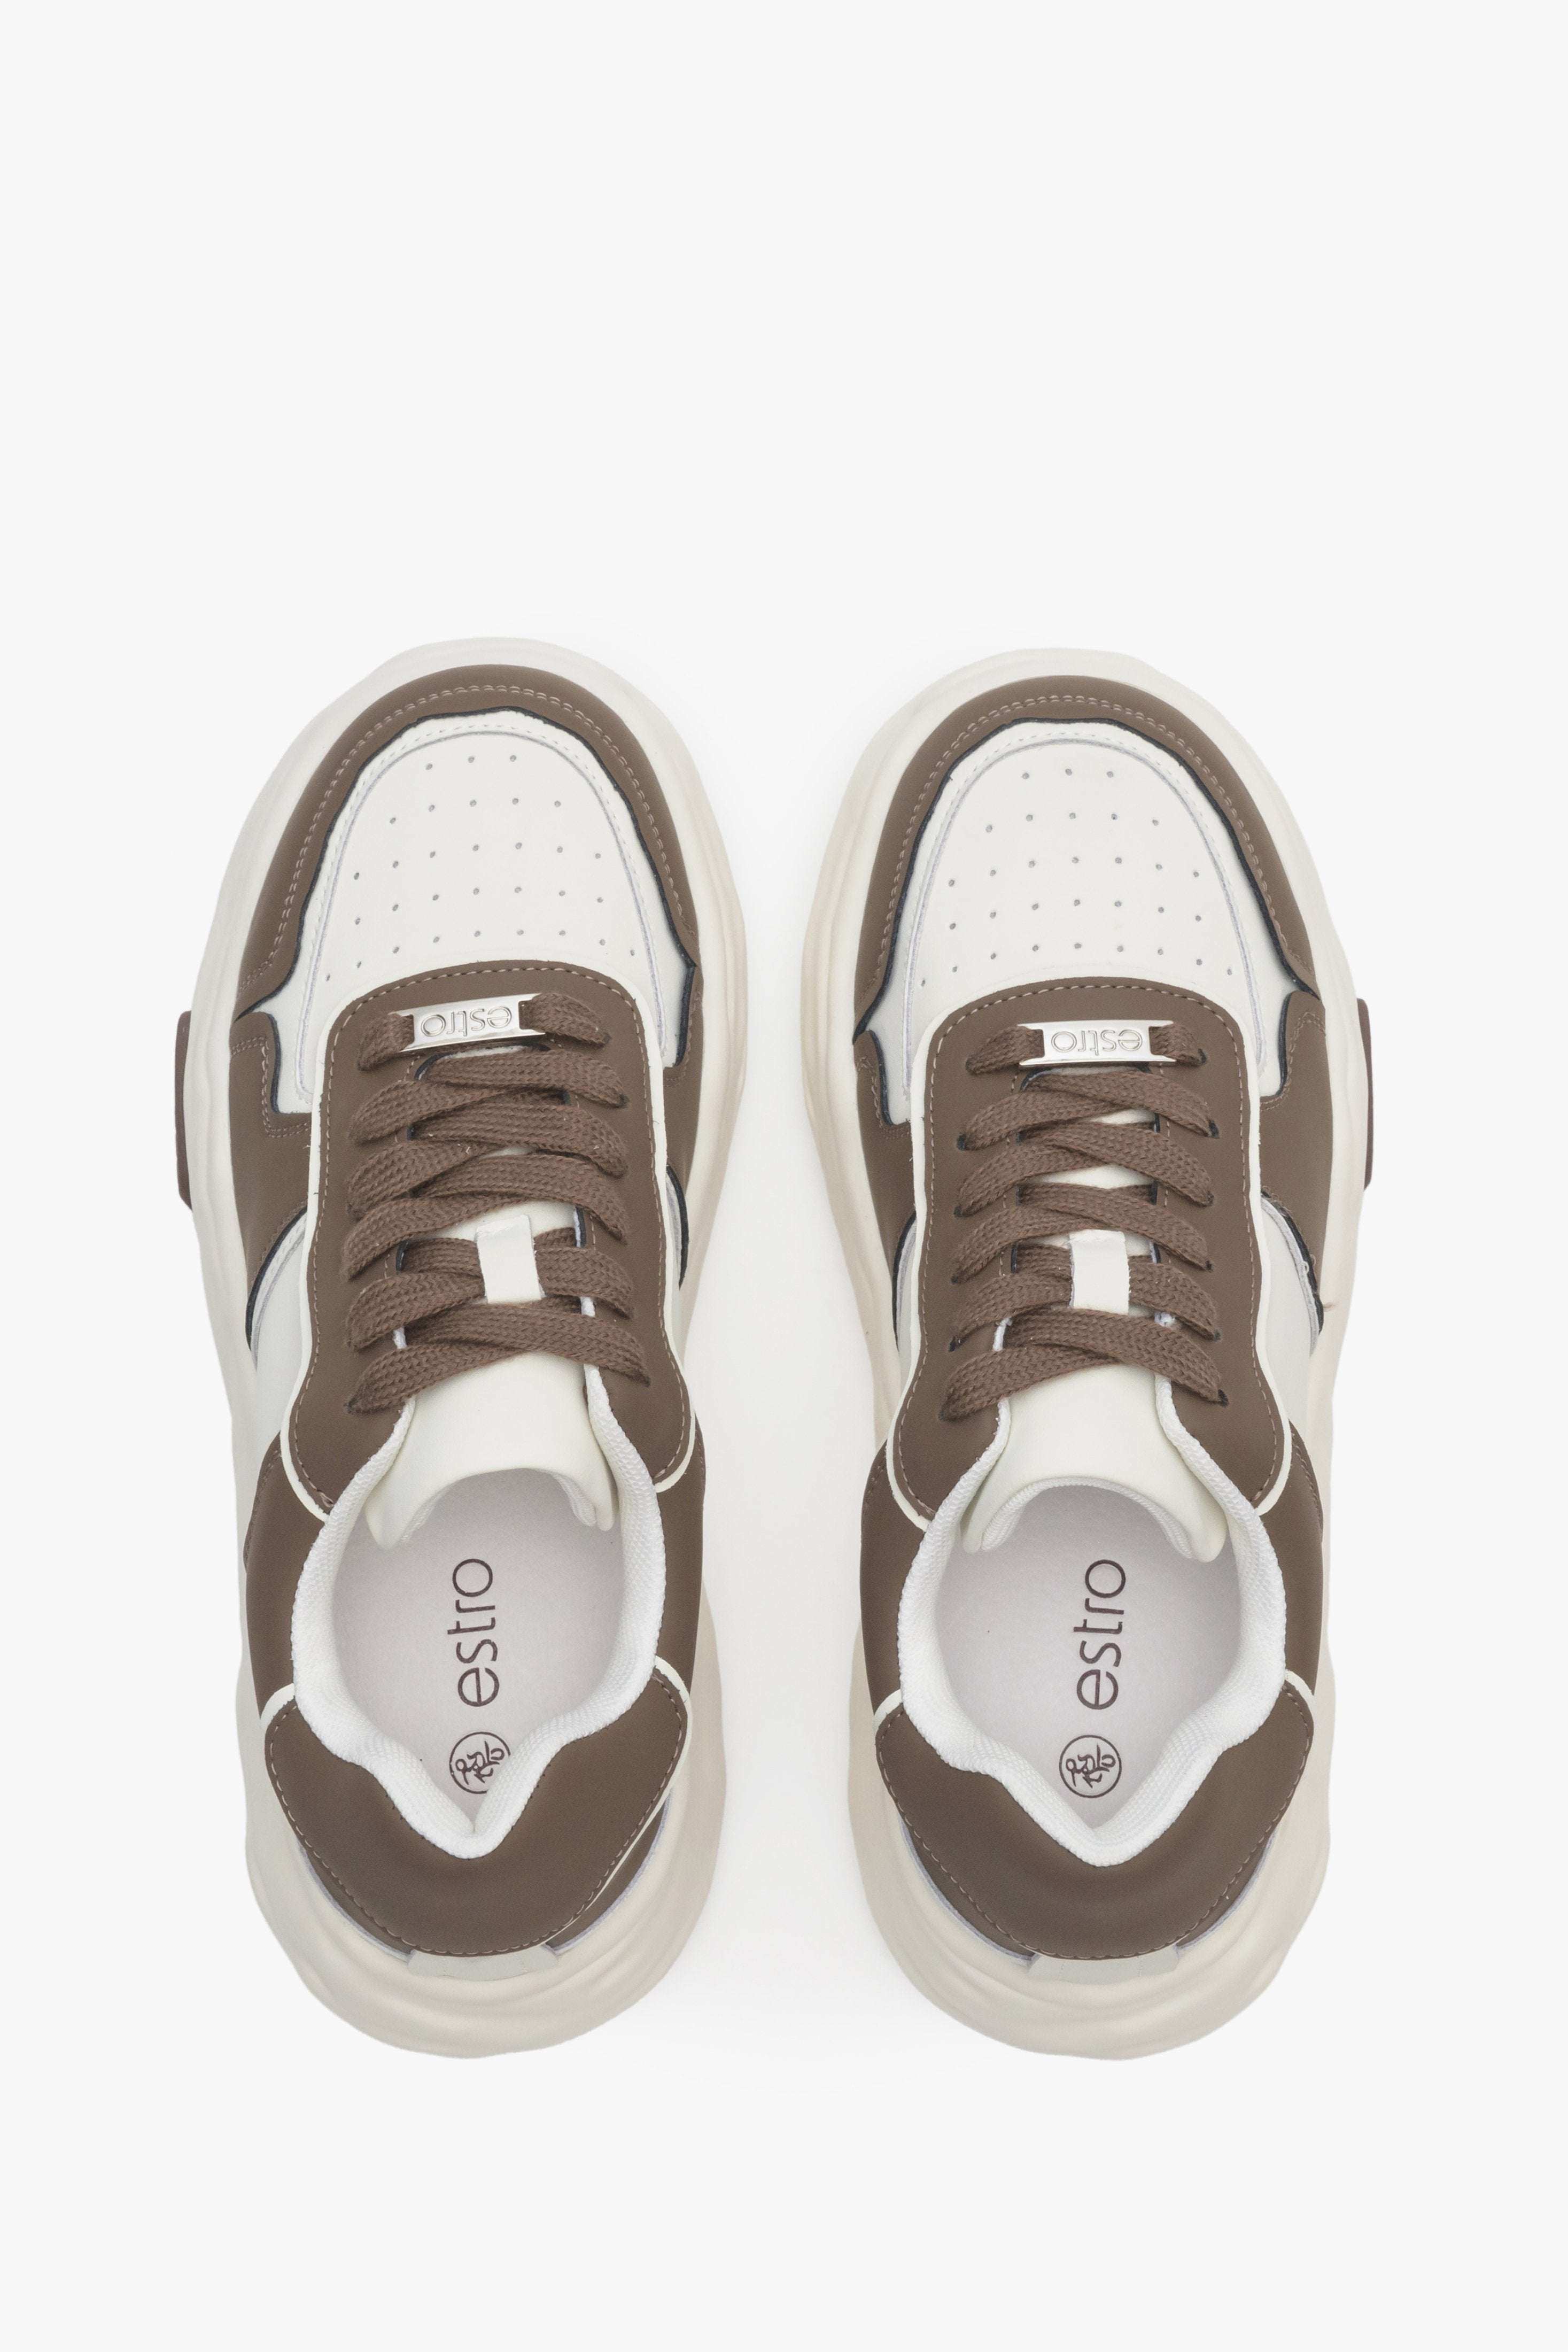 Damskie, skórzane sneakersy w kolorze brązowo-białym Estro - prezentacja modelu z góry.